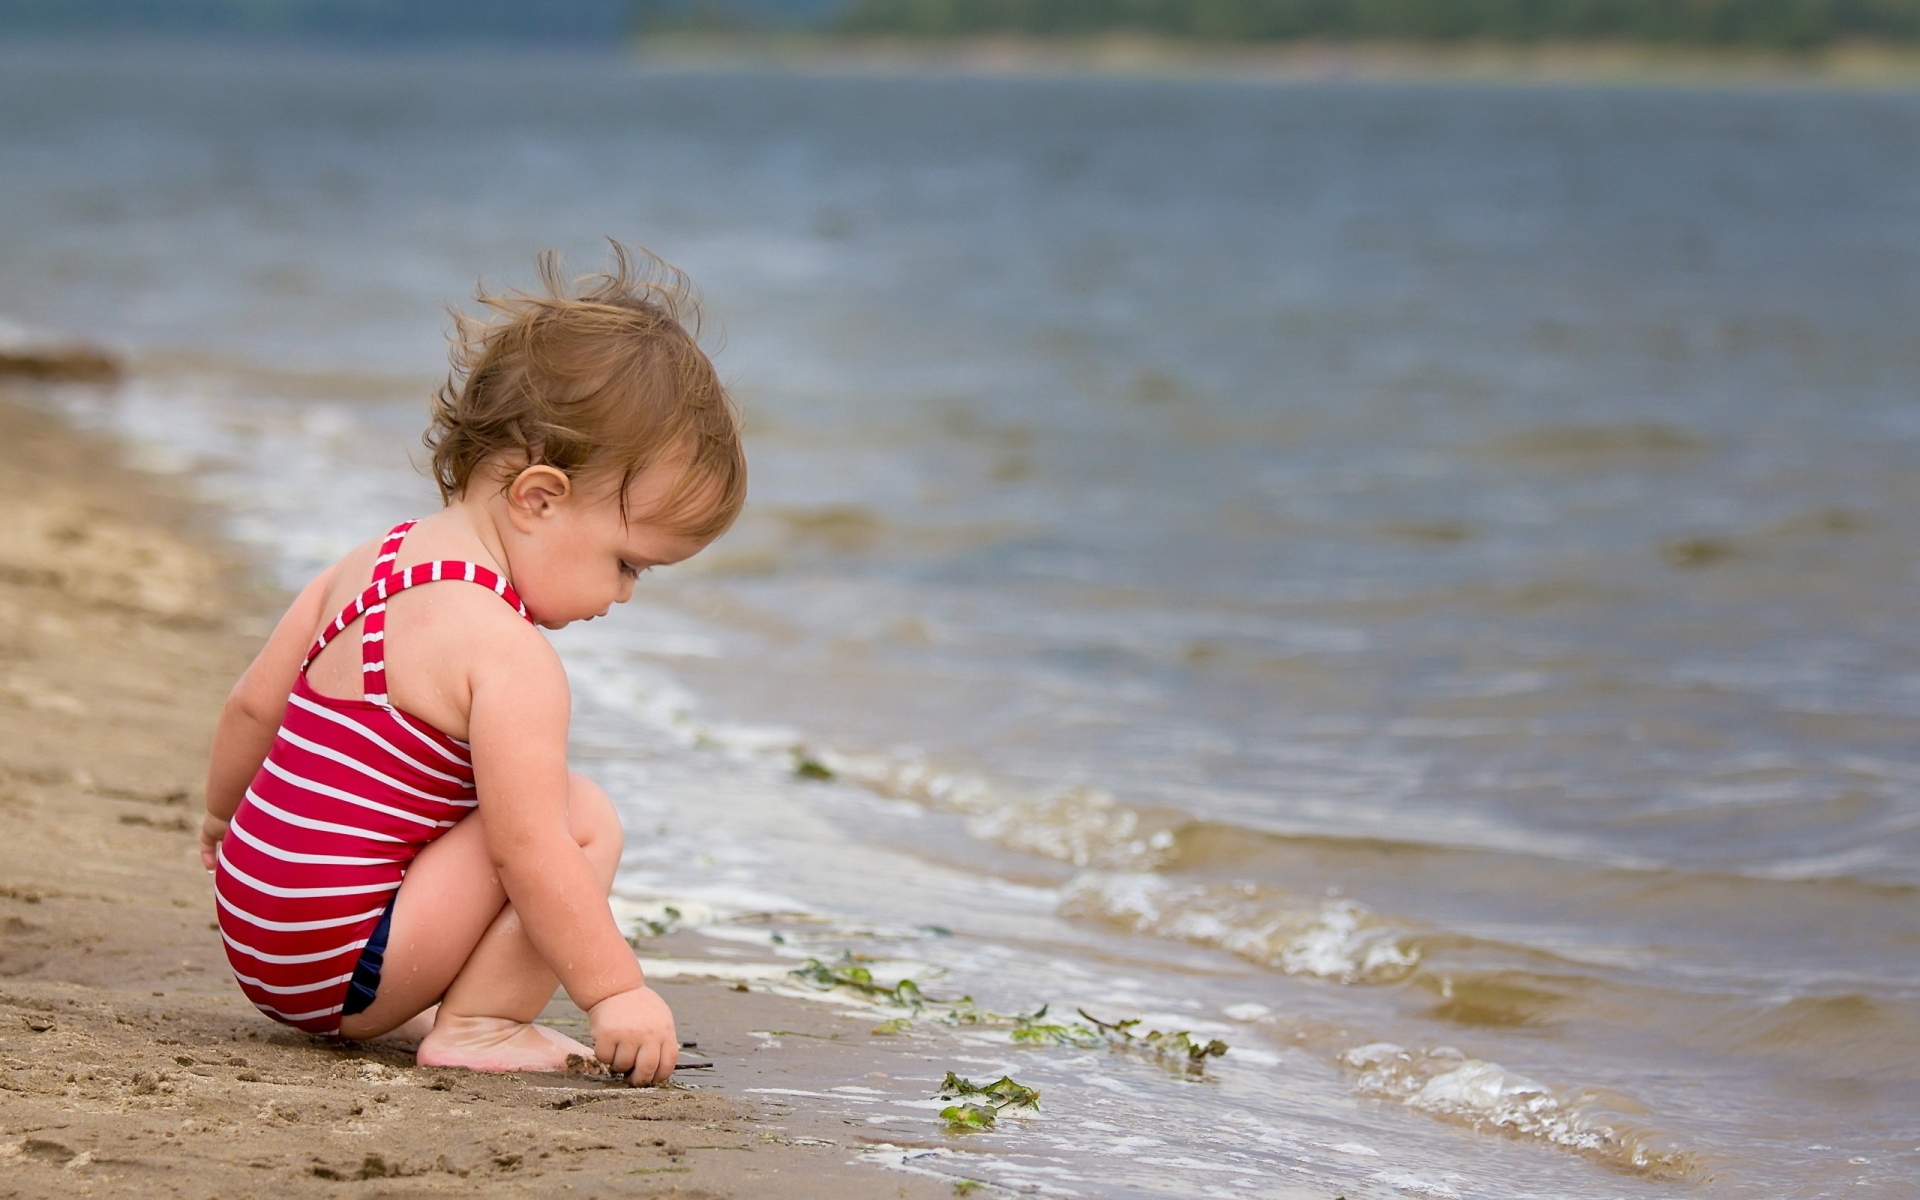 Картинки Ребенок, пляж, море, сидеть, играть, скалы, песок фото и обои на рабочий стол